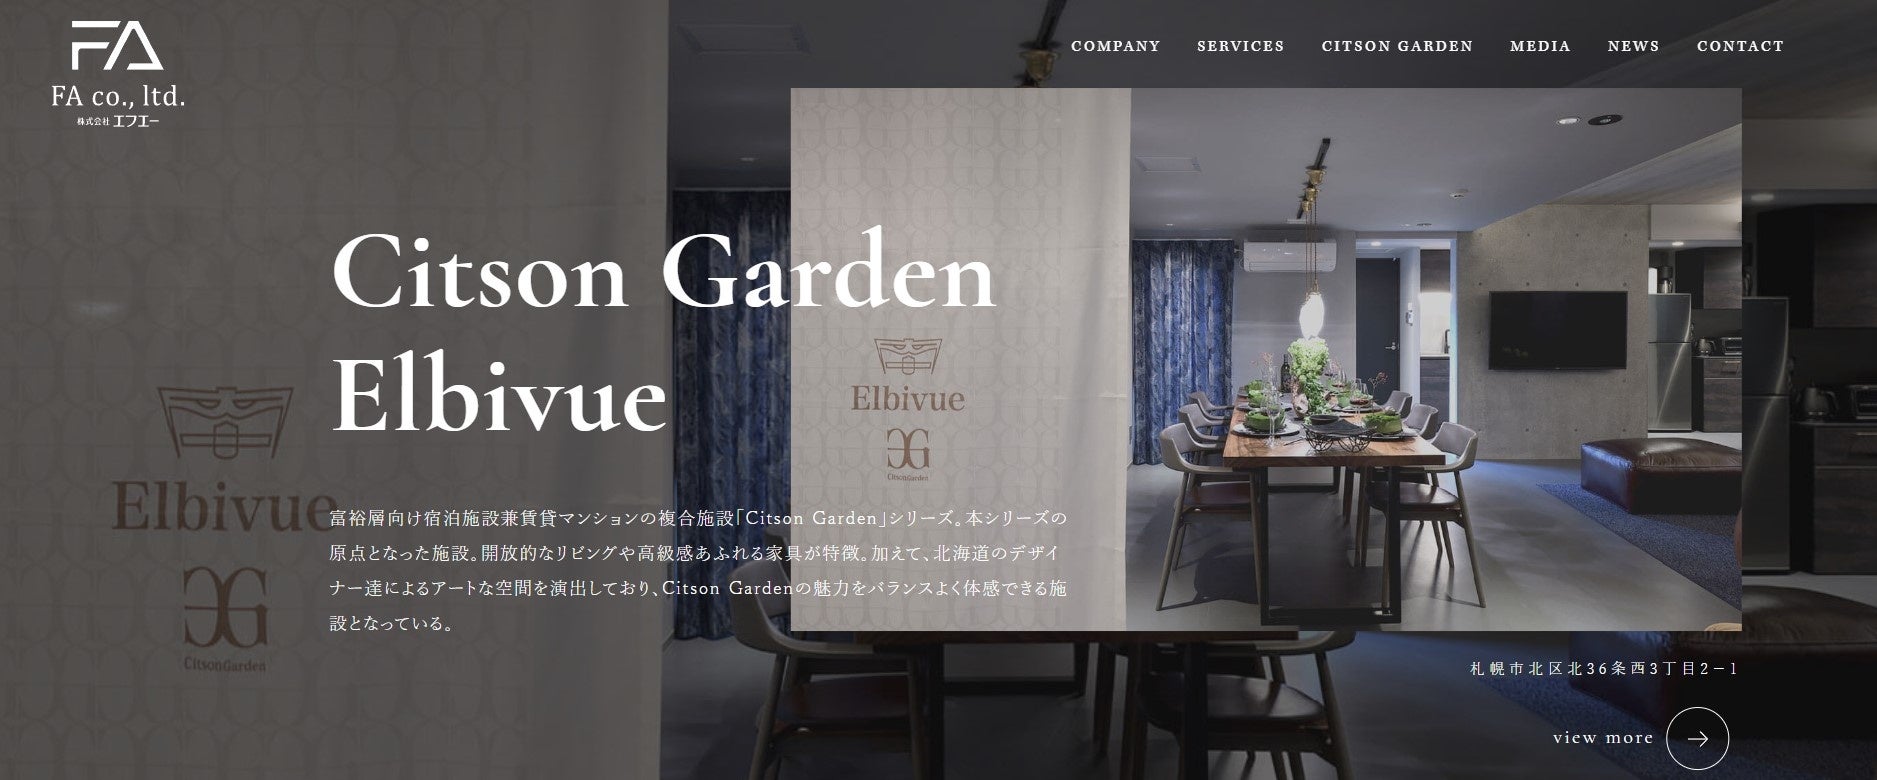 北海道札幌市の不動産業「エフエー」が新ホームページを公開のサブ画像4